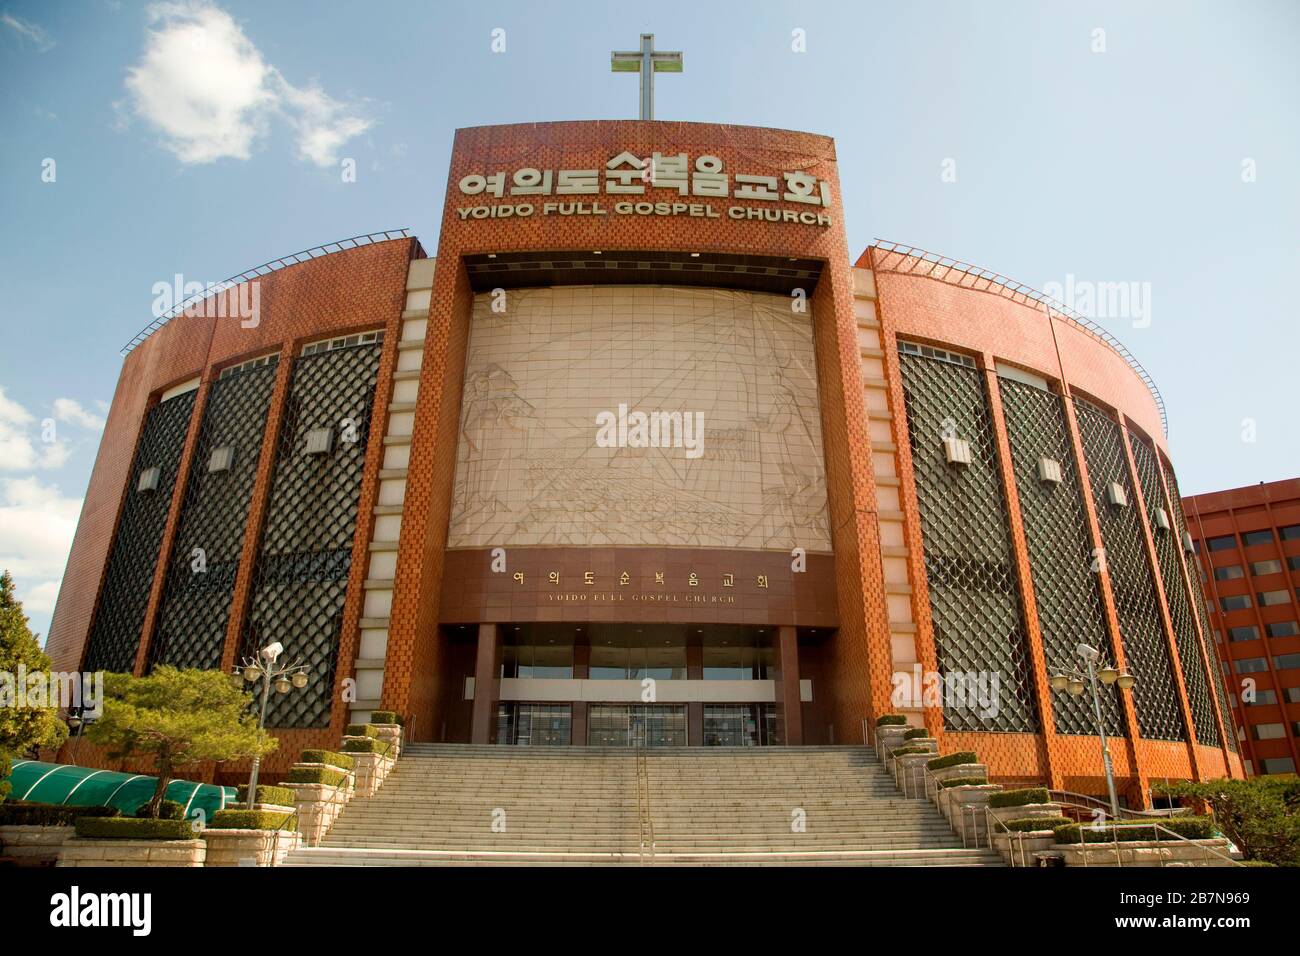 Iglesia del Evangelio completo de Yoido, 15 de marzo de 2020 : Vista  general de la Iglesia del Evangelio completo de Yoido en Seúl, Corea del Sur.  La iglesia sostuvo un flujo